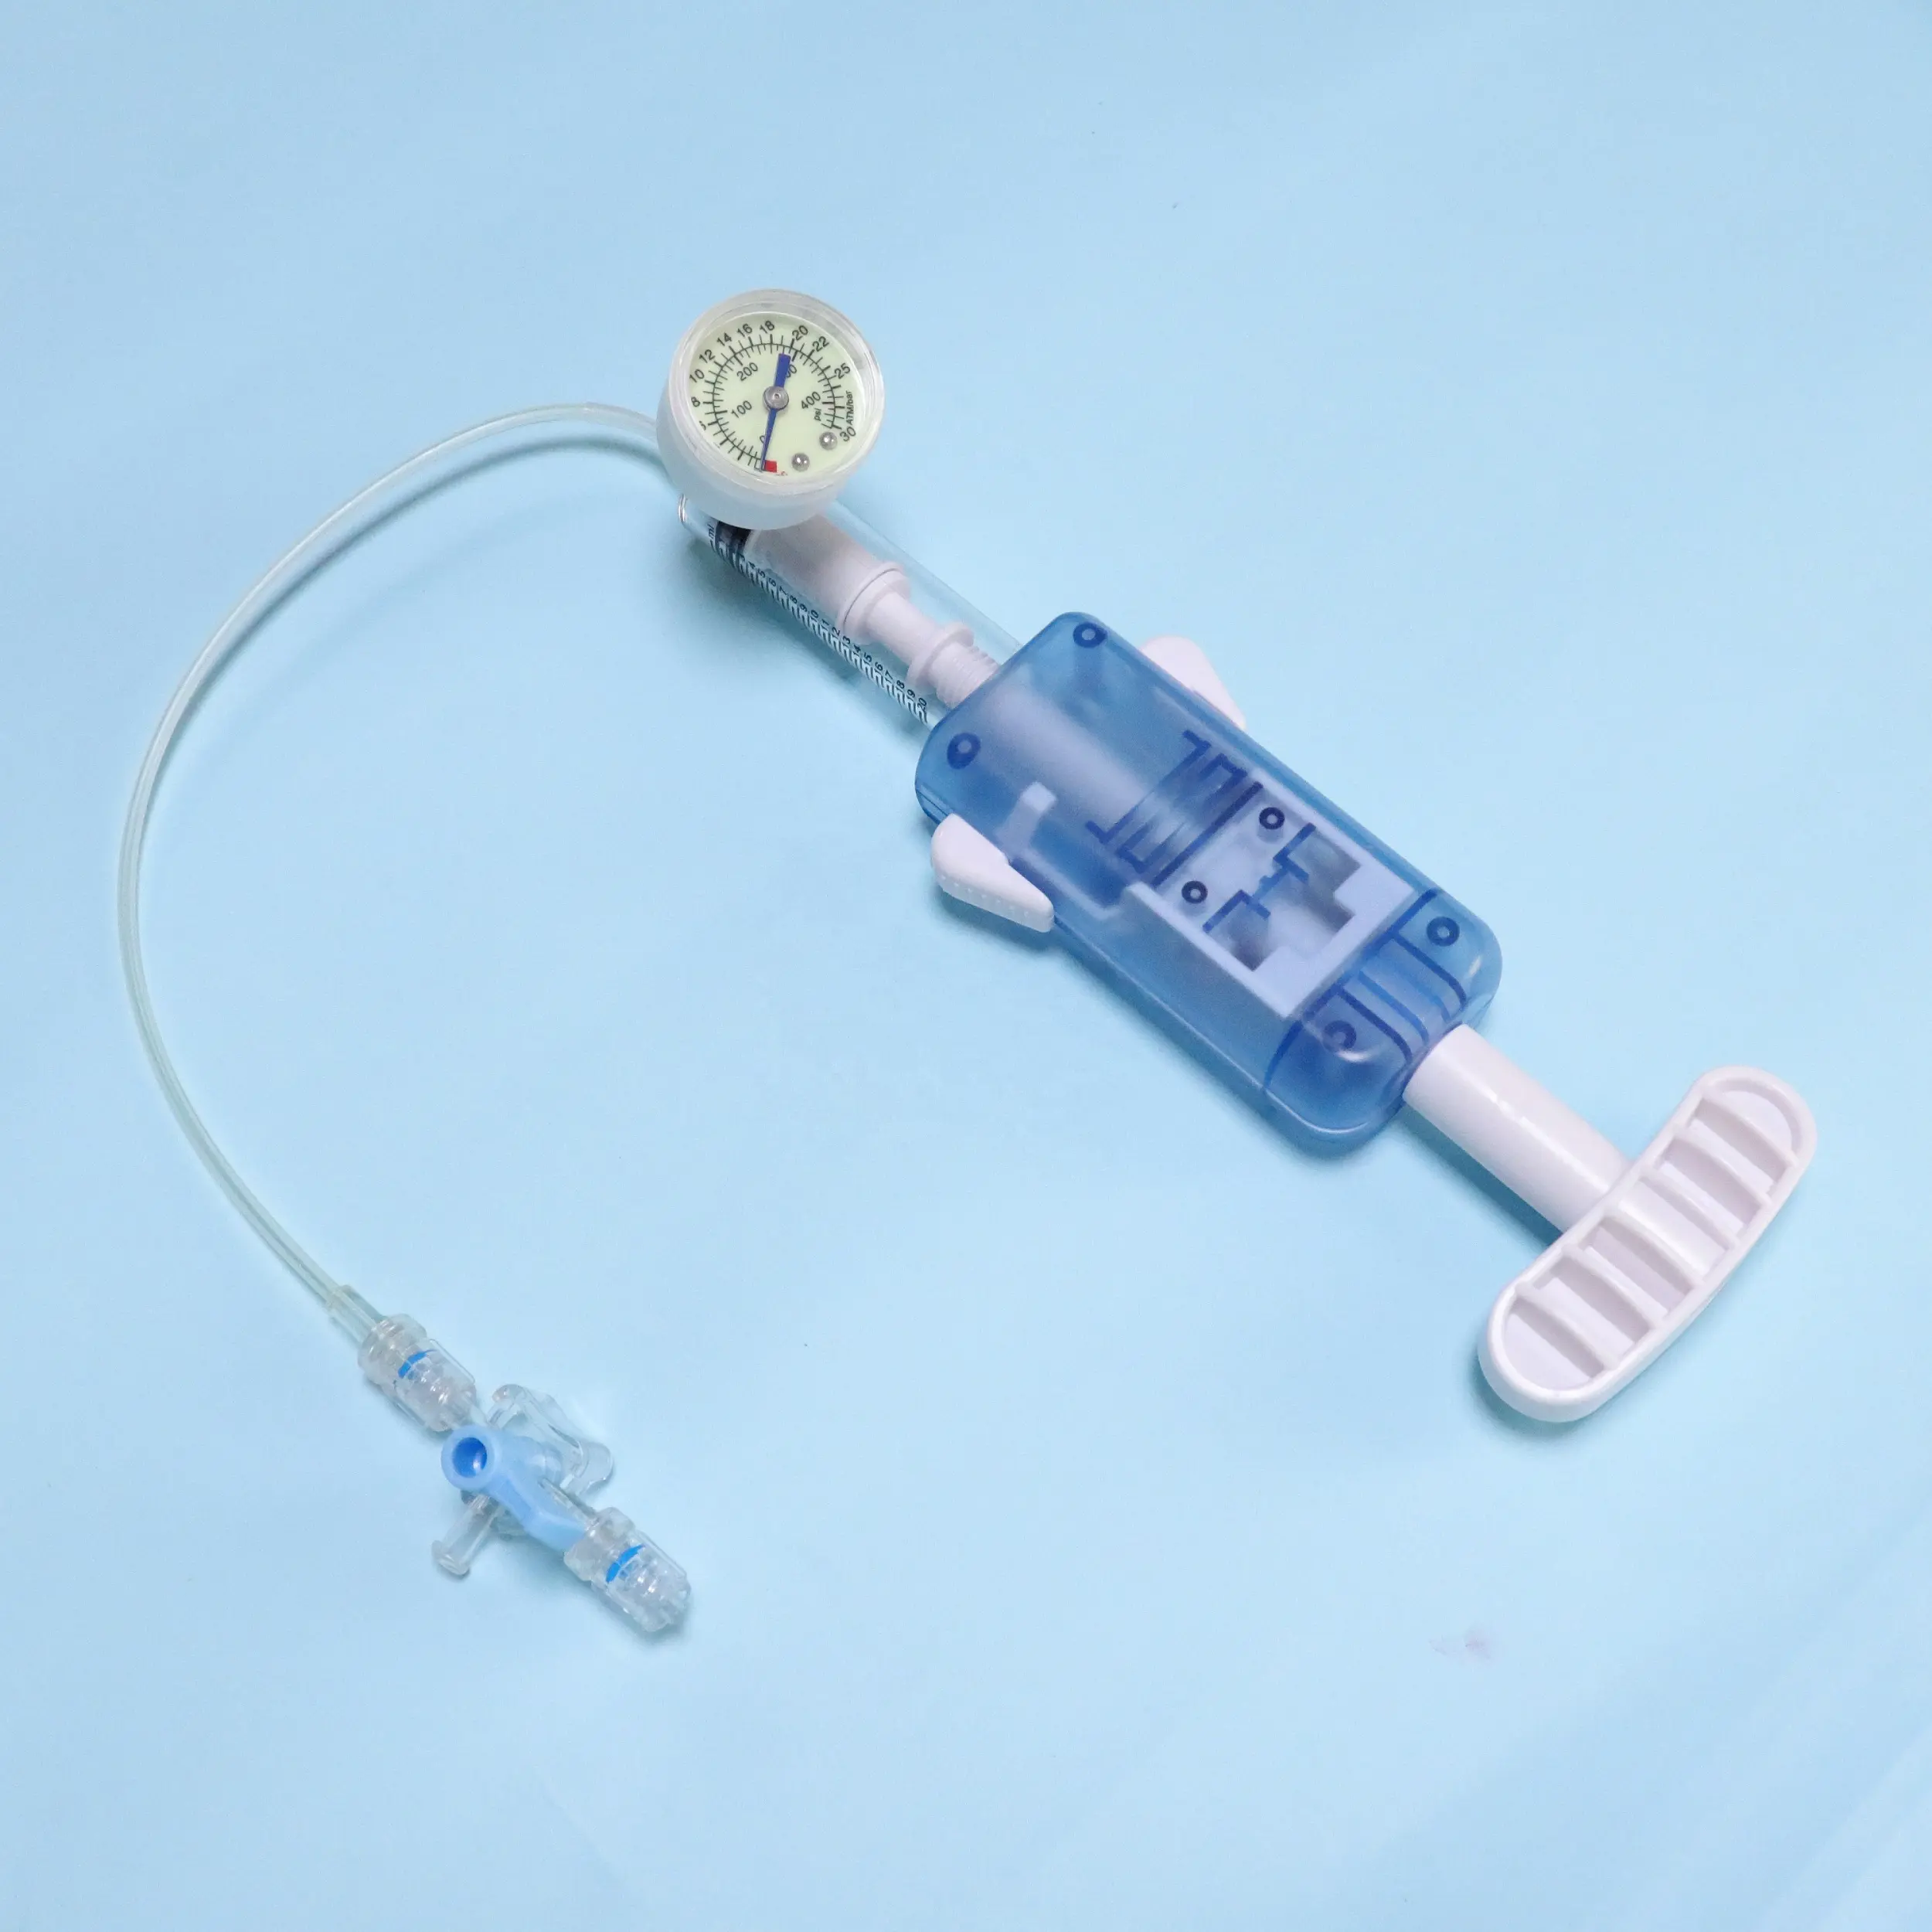 Tianck – consommables de fournitures médicales, dispositif de gonflage de ballon de cardiologie médical marqué CE